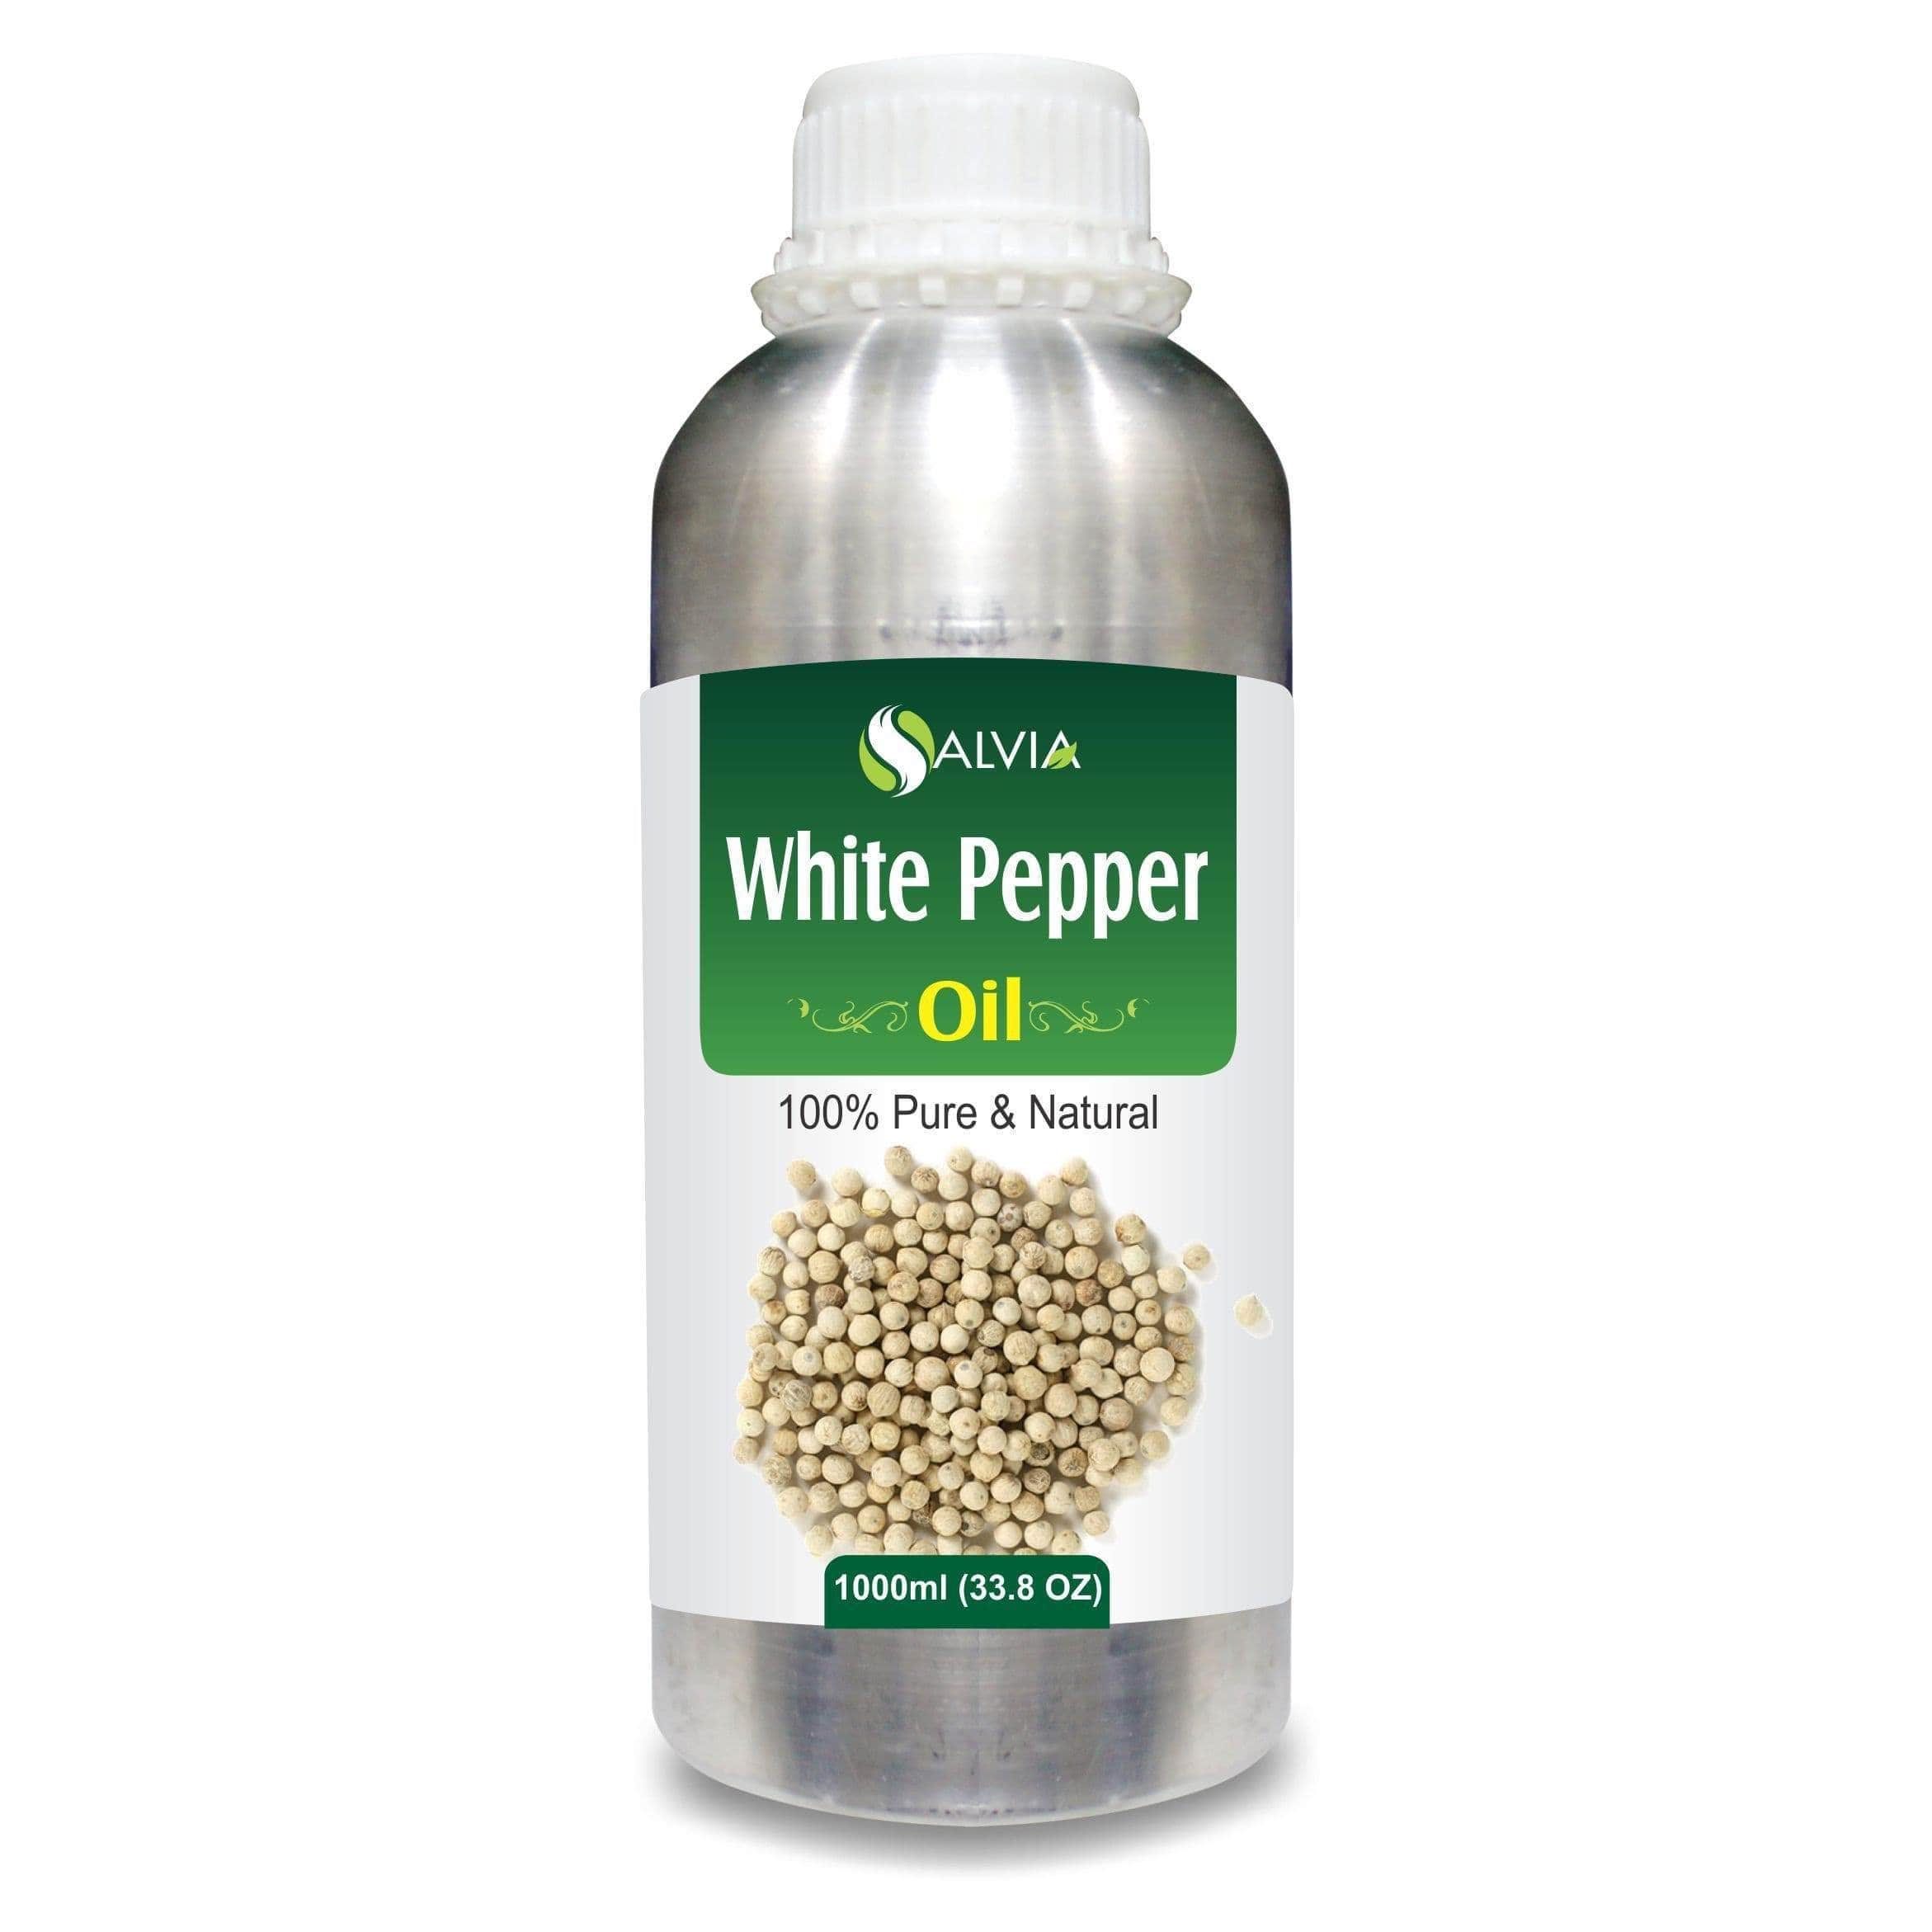 white pepper benefits for hair